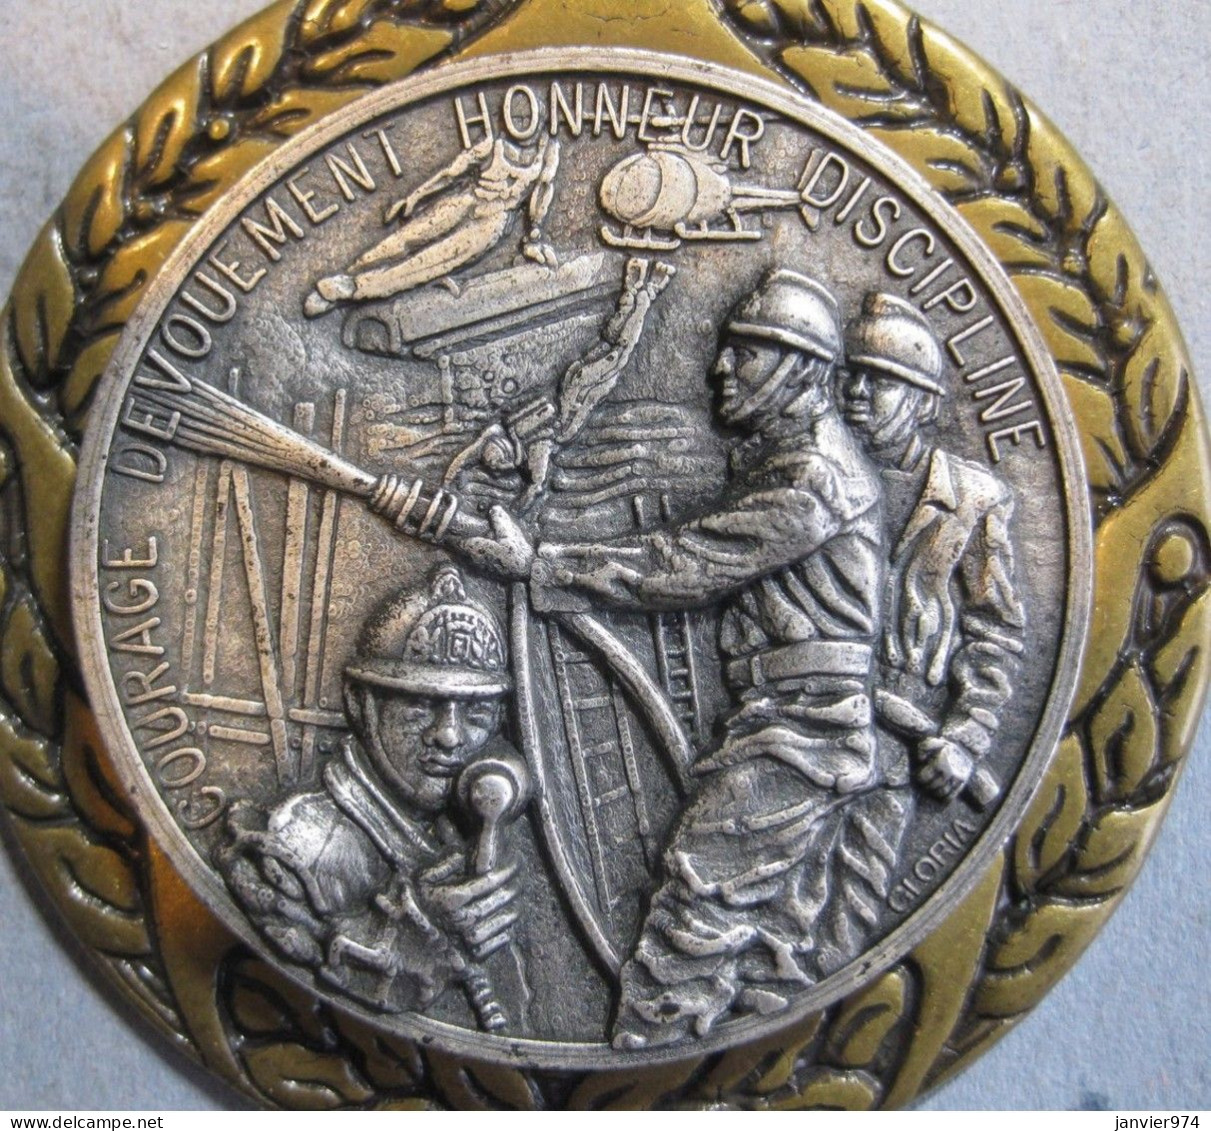 Tres Belle Applique En Bronze , Medaille Pompiers , Courage , Dévouement , Honneur , Discipline Par Gloria - Pompieri